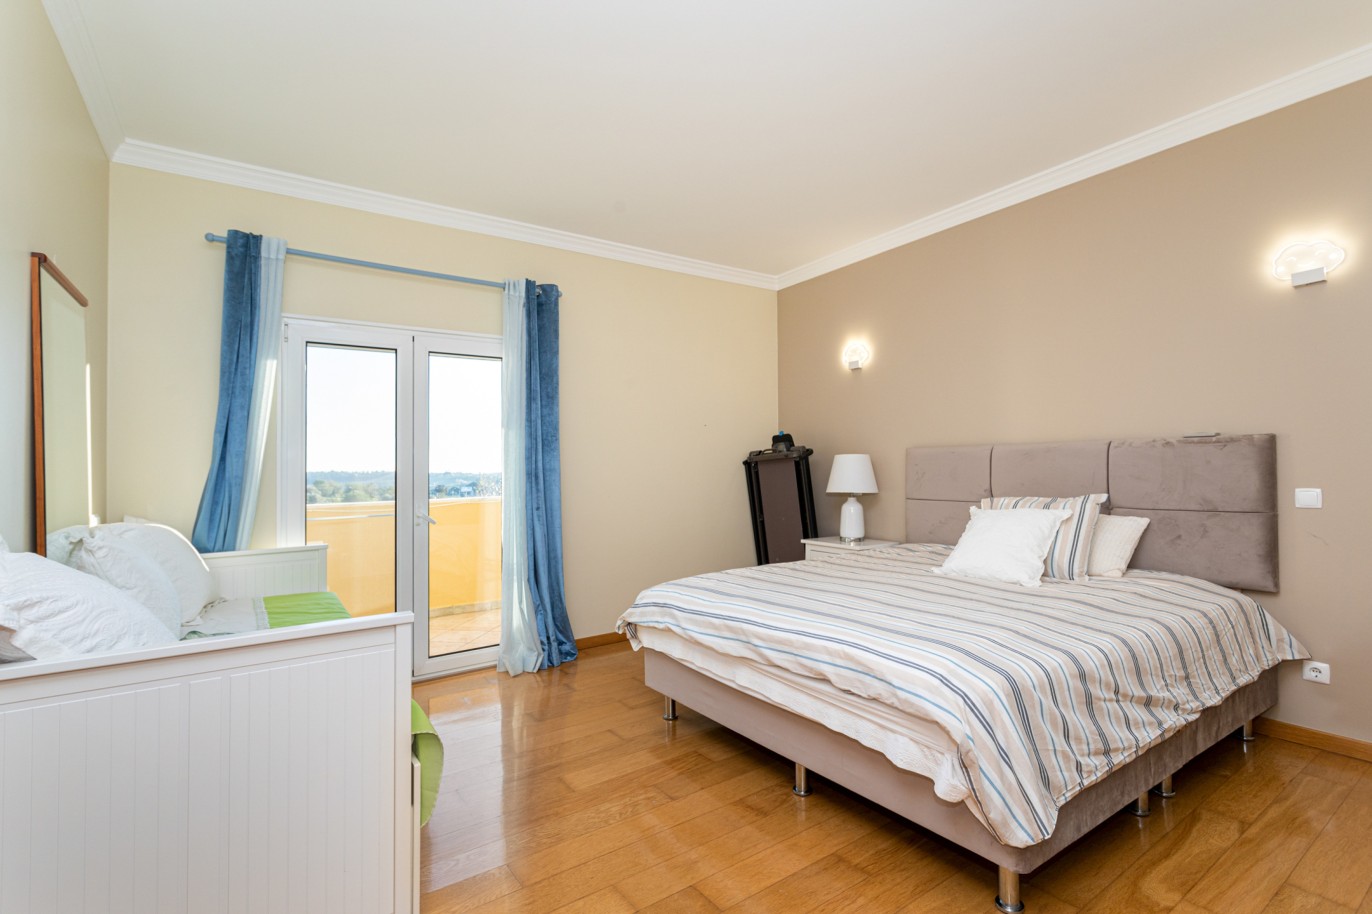 Villa de 4 dormitorios en zona de prestigio, en venta en Almancil, Algarve_217663